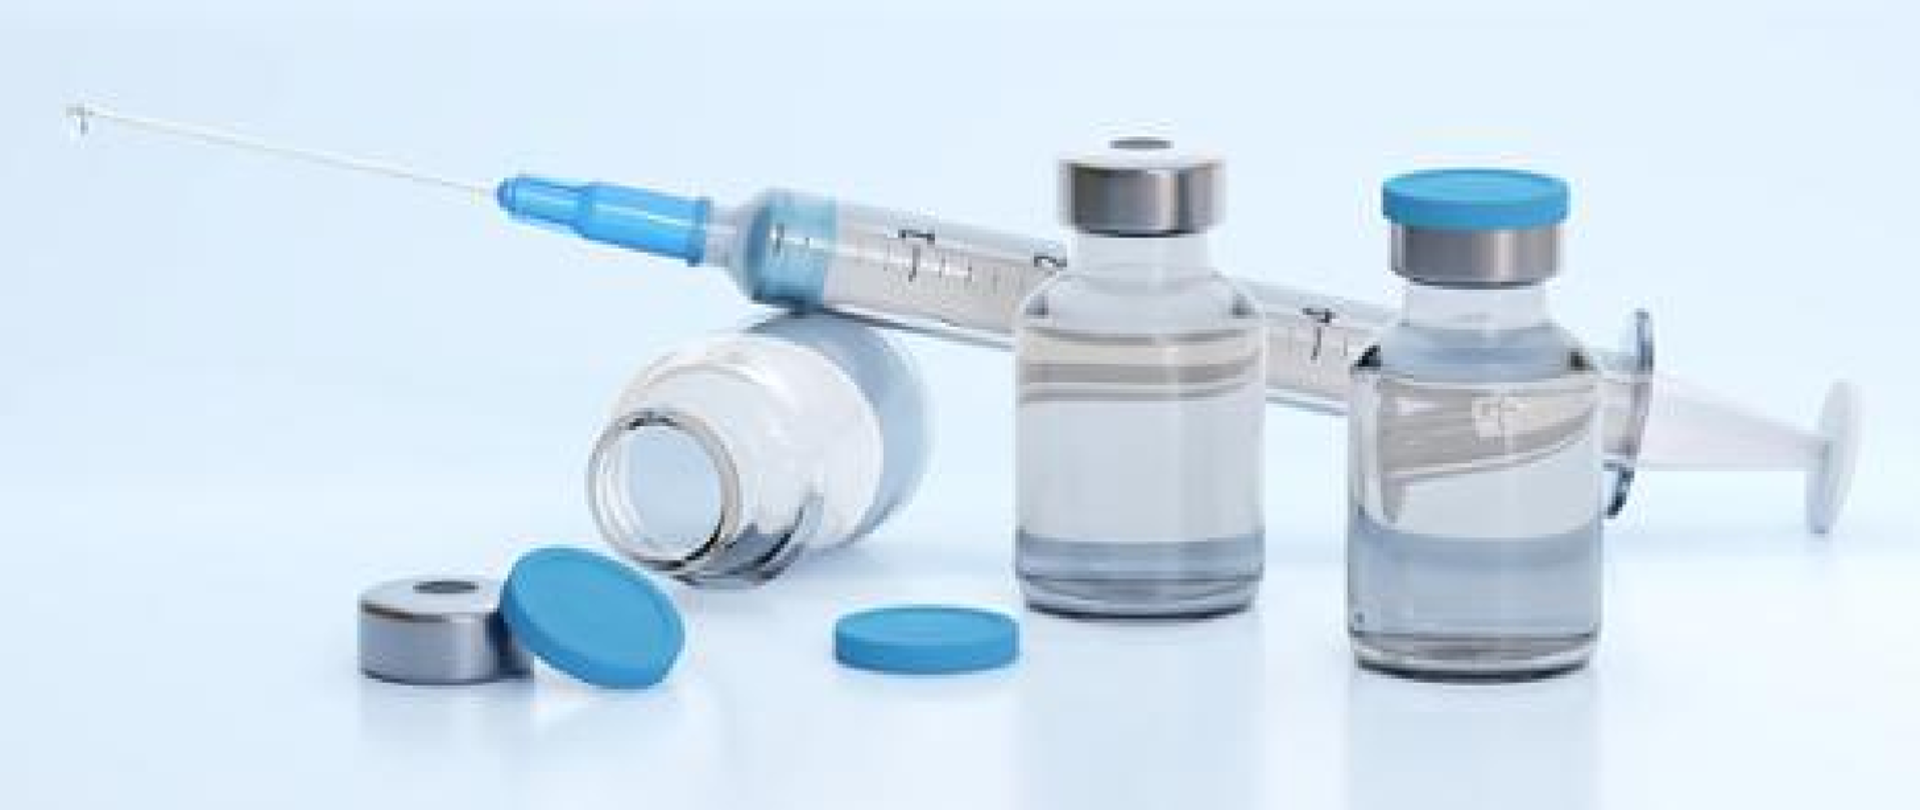 Ampułki i strzykawka ze szczepionkami